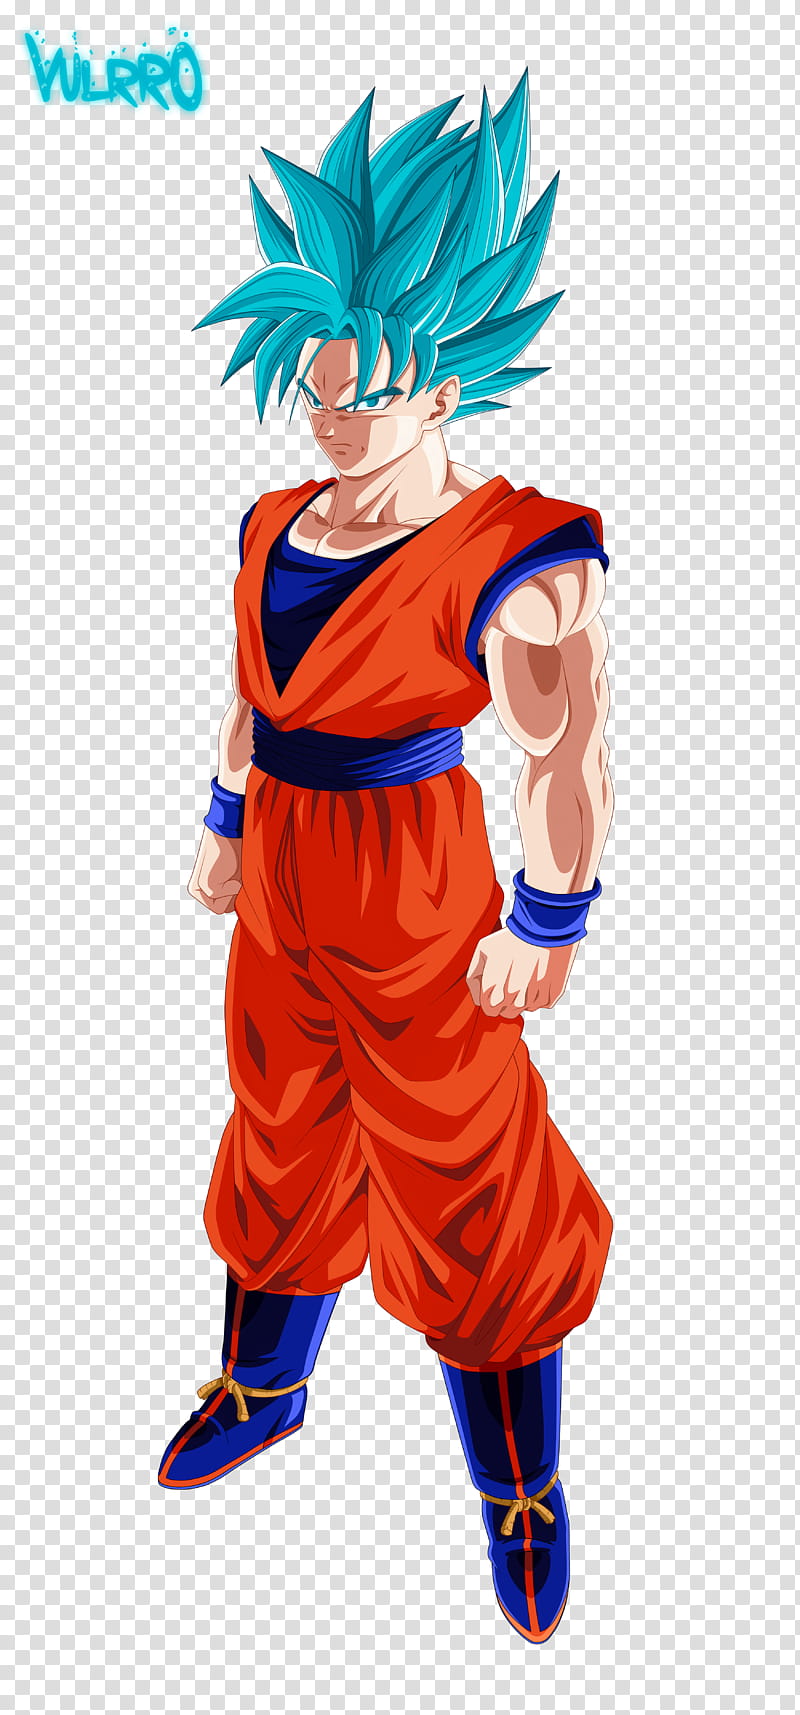 Goku Super Saiyan Blue V transparent background PNG clipart